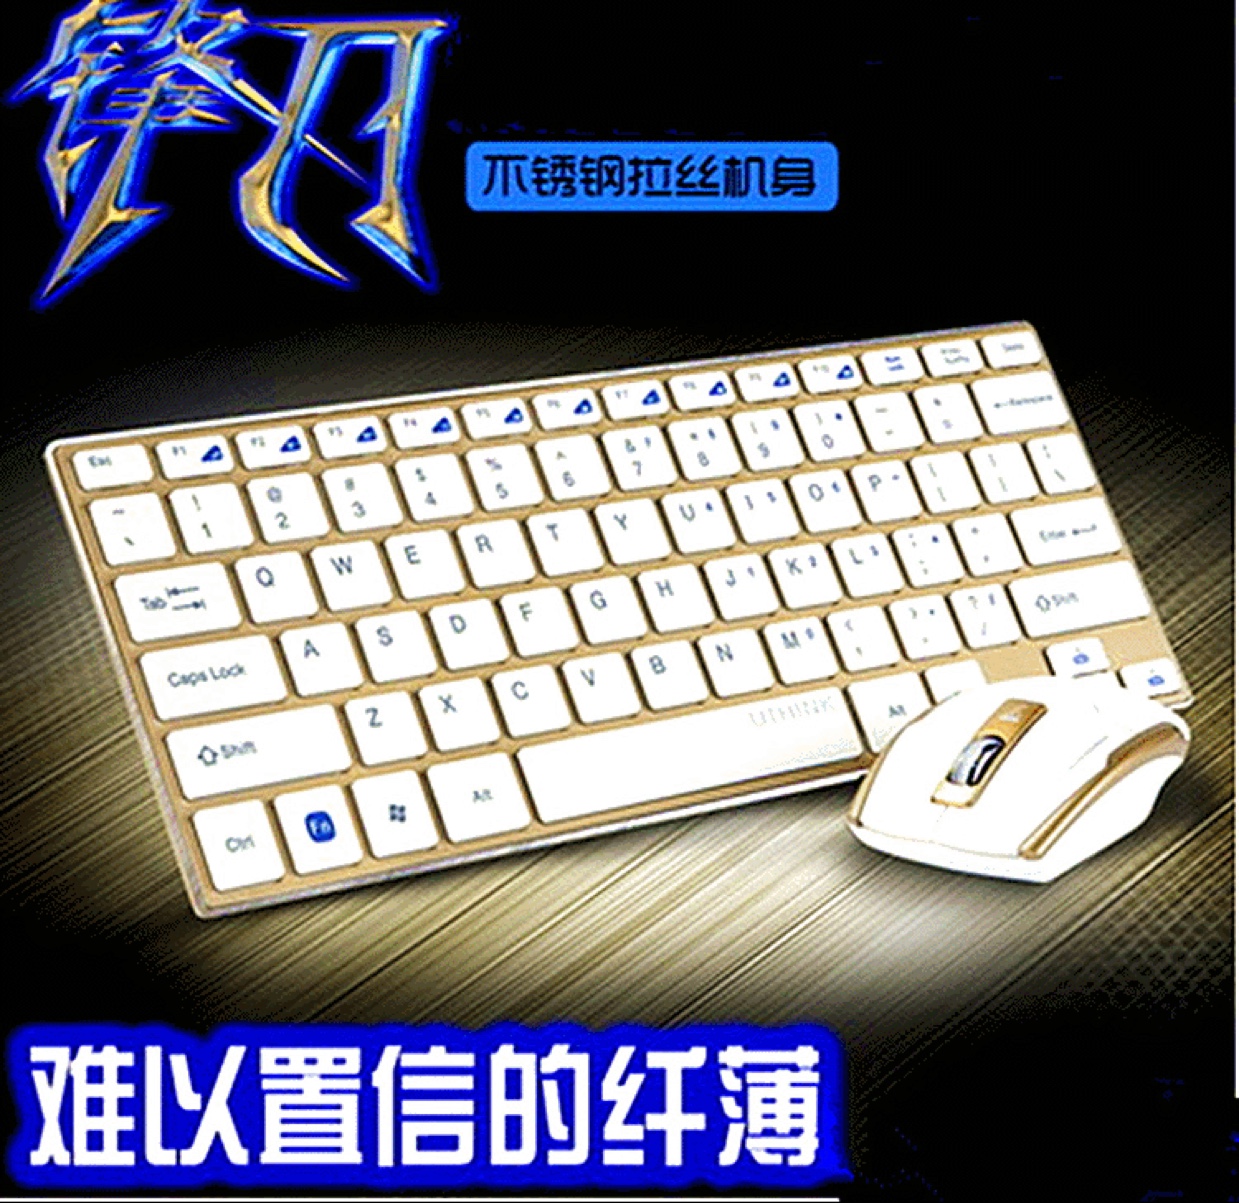 HK3910彩色超薄无线键鼠套装 迷你无线金属键盘鼠标套装 批发